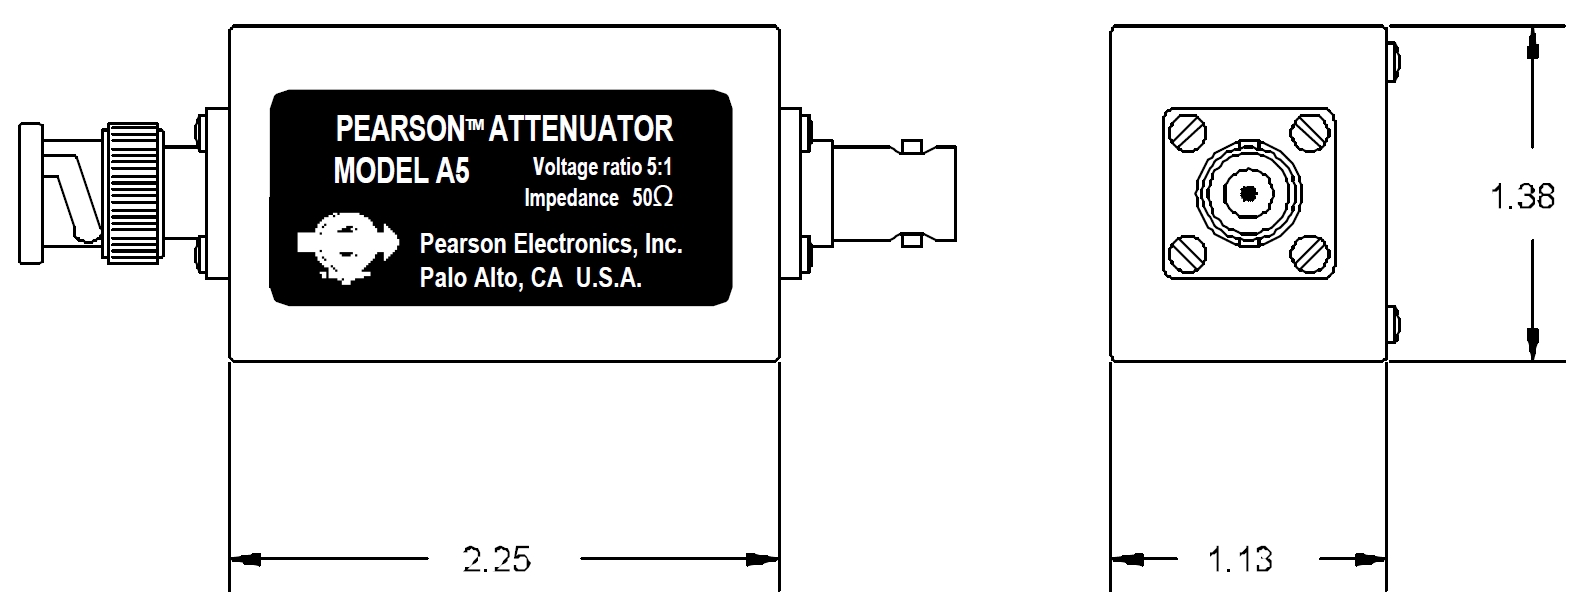 Аттенюатор для токовых мониторов, 0 - 100 МГц, 50 Ом, 14 дБ, 7,5 В скз макс., время нарастания 5 нс